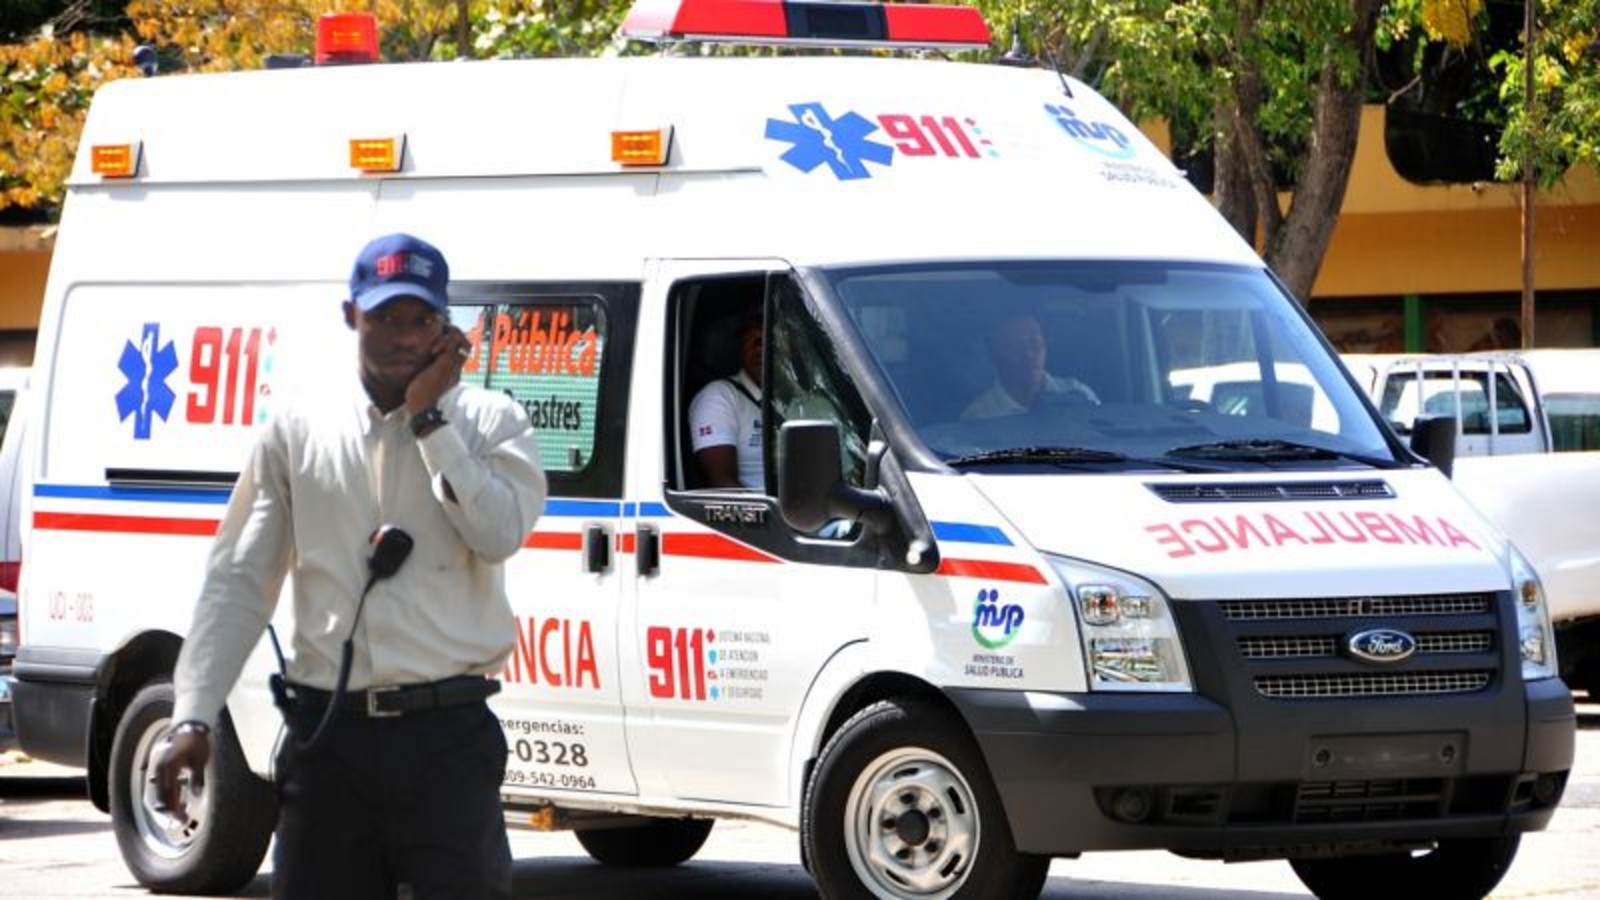 REPÚBLICA DOMINICANA: 911 cumple 5 años con casi dos millones de asistencias